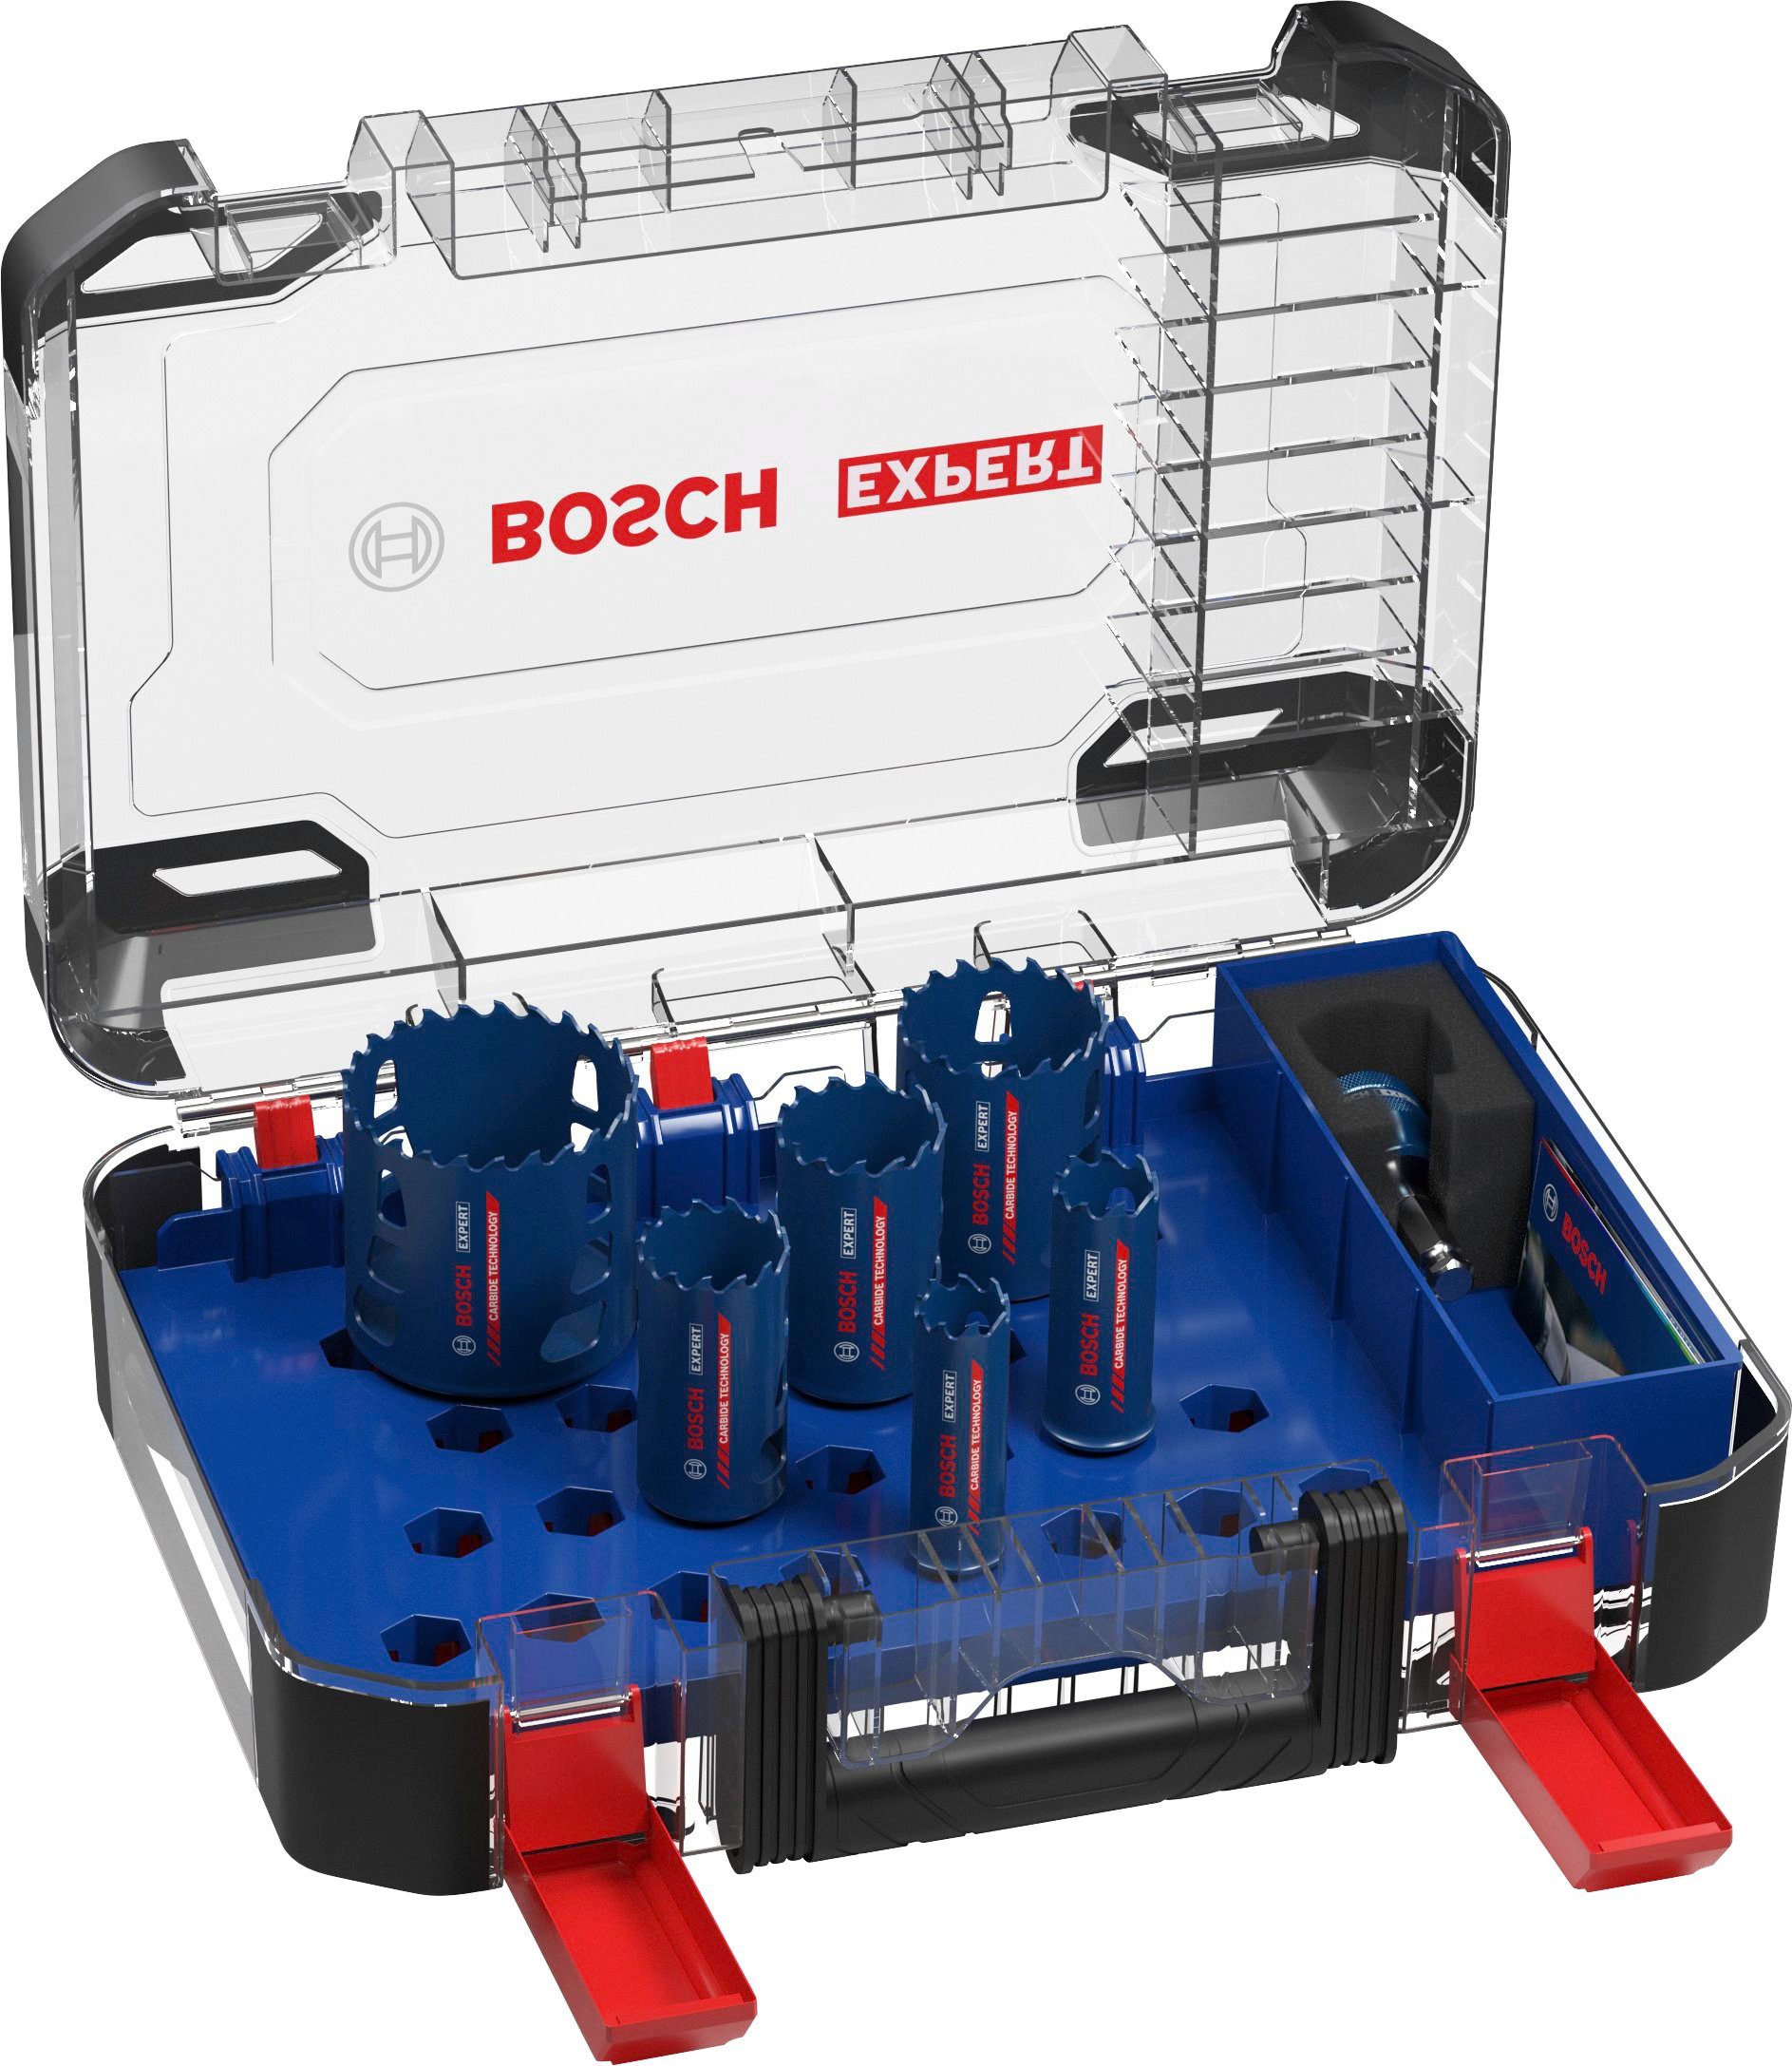 Bosch Professional Lochsäge EXPERT 9-tlg., Aufnahmesystem: Power-Change-Adapter, Set, Standard-Bohrfutter mm, Bosch Material, 22/25/35/40/51/68 Tough